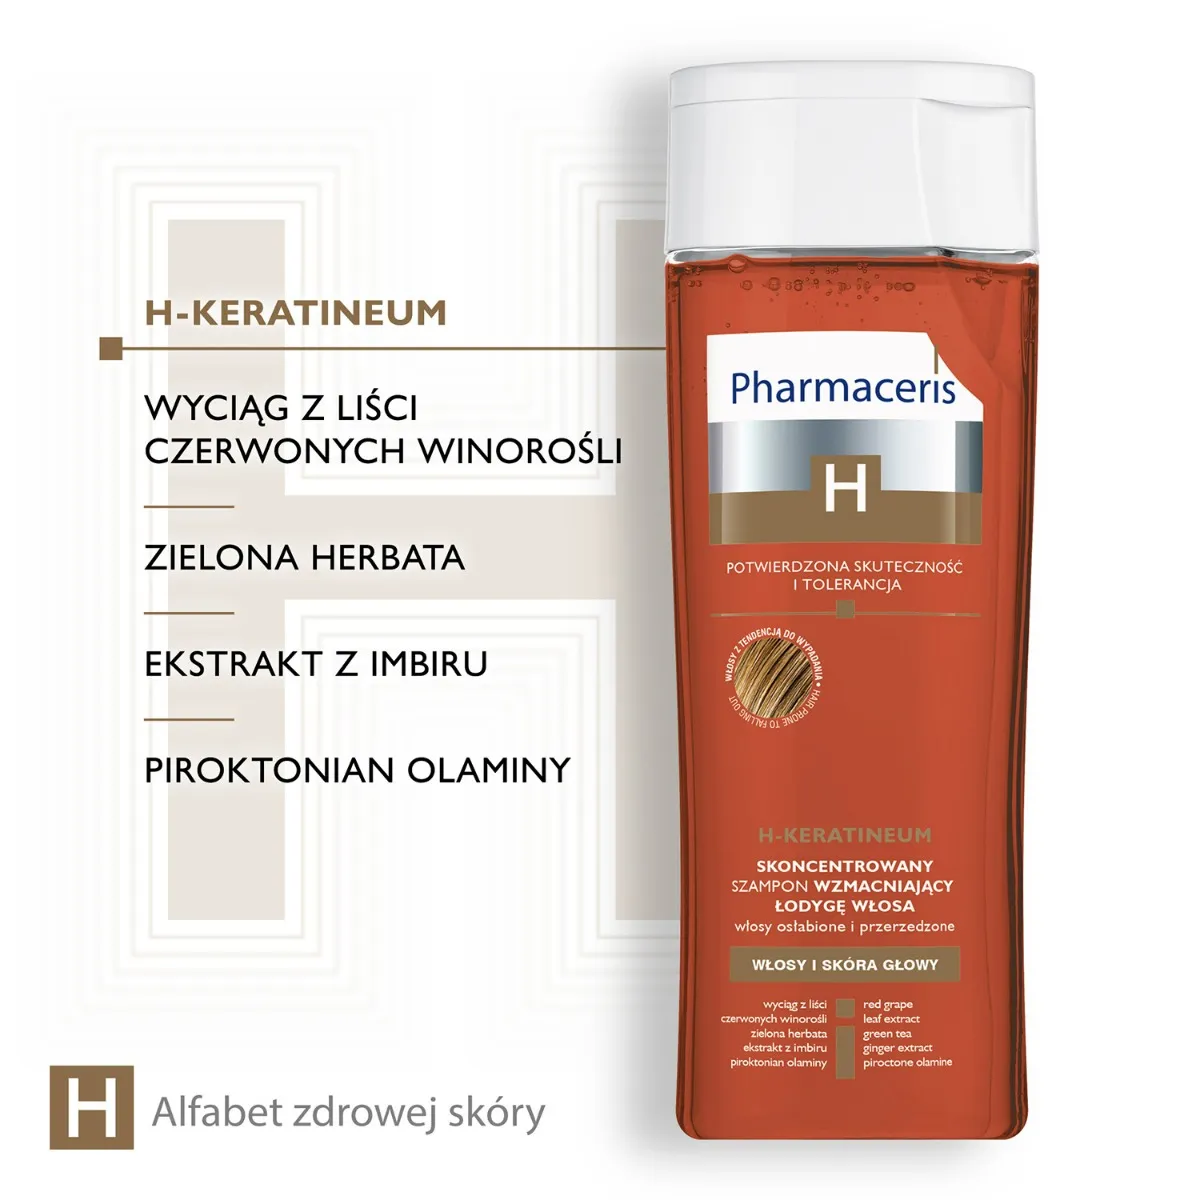 Pharmaceris H Keratineum, skoncentrowany szampon wzmacniający łodygę włosa do włosów osłabionych, 250 ml 